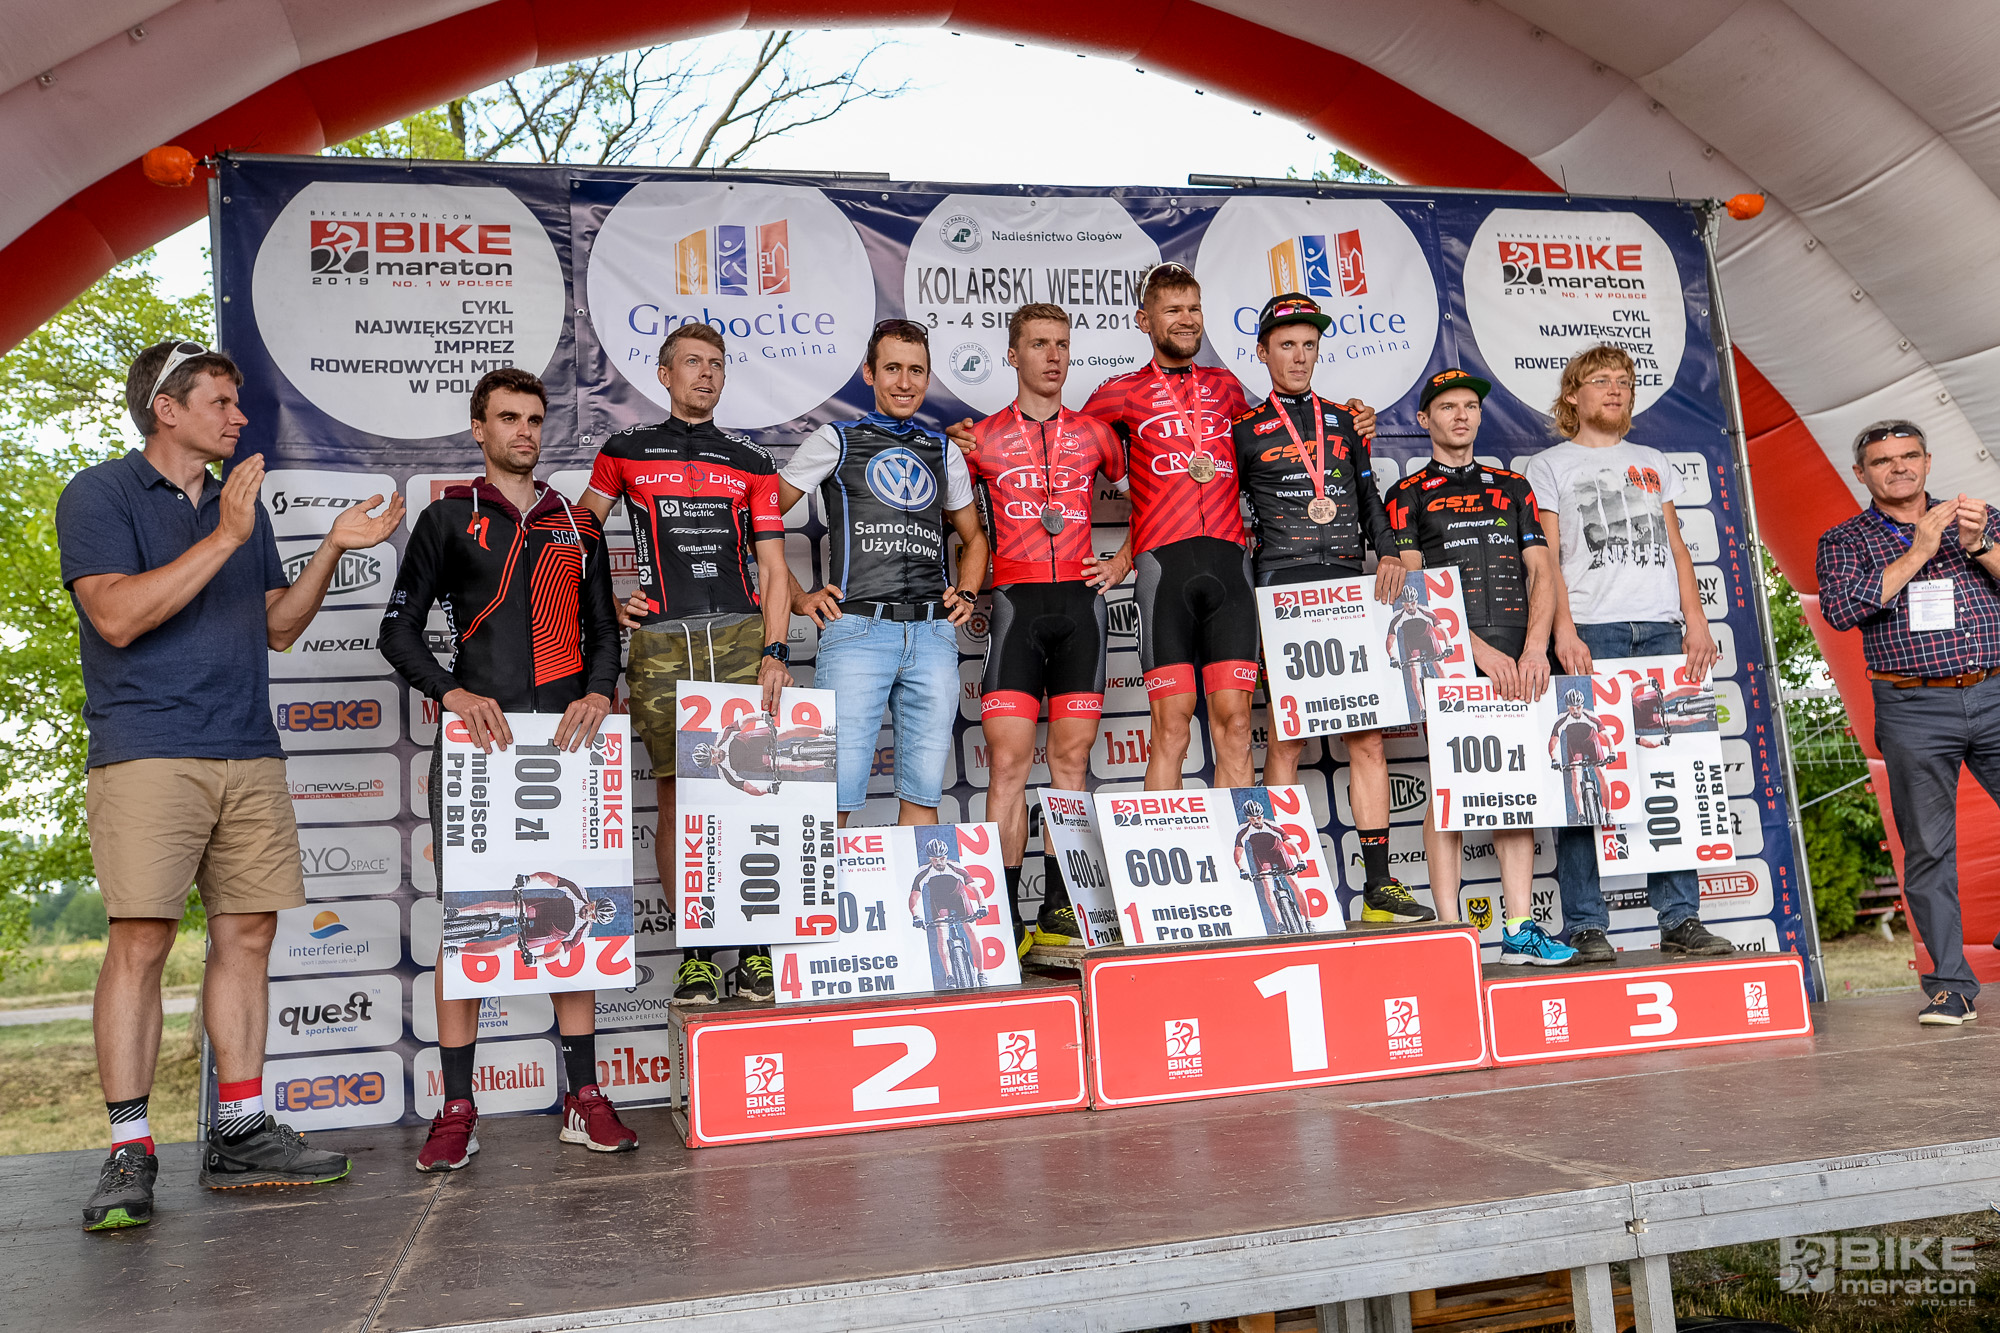 Kolarski Weekend za nami – Wojciech Halejak wygrywa Bike Maraton w Obiszowie